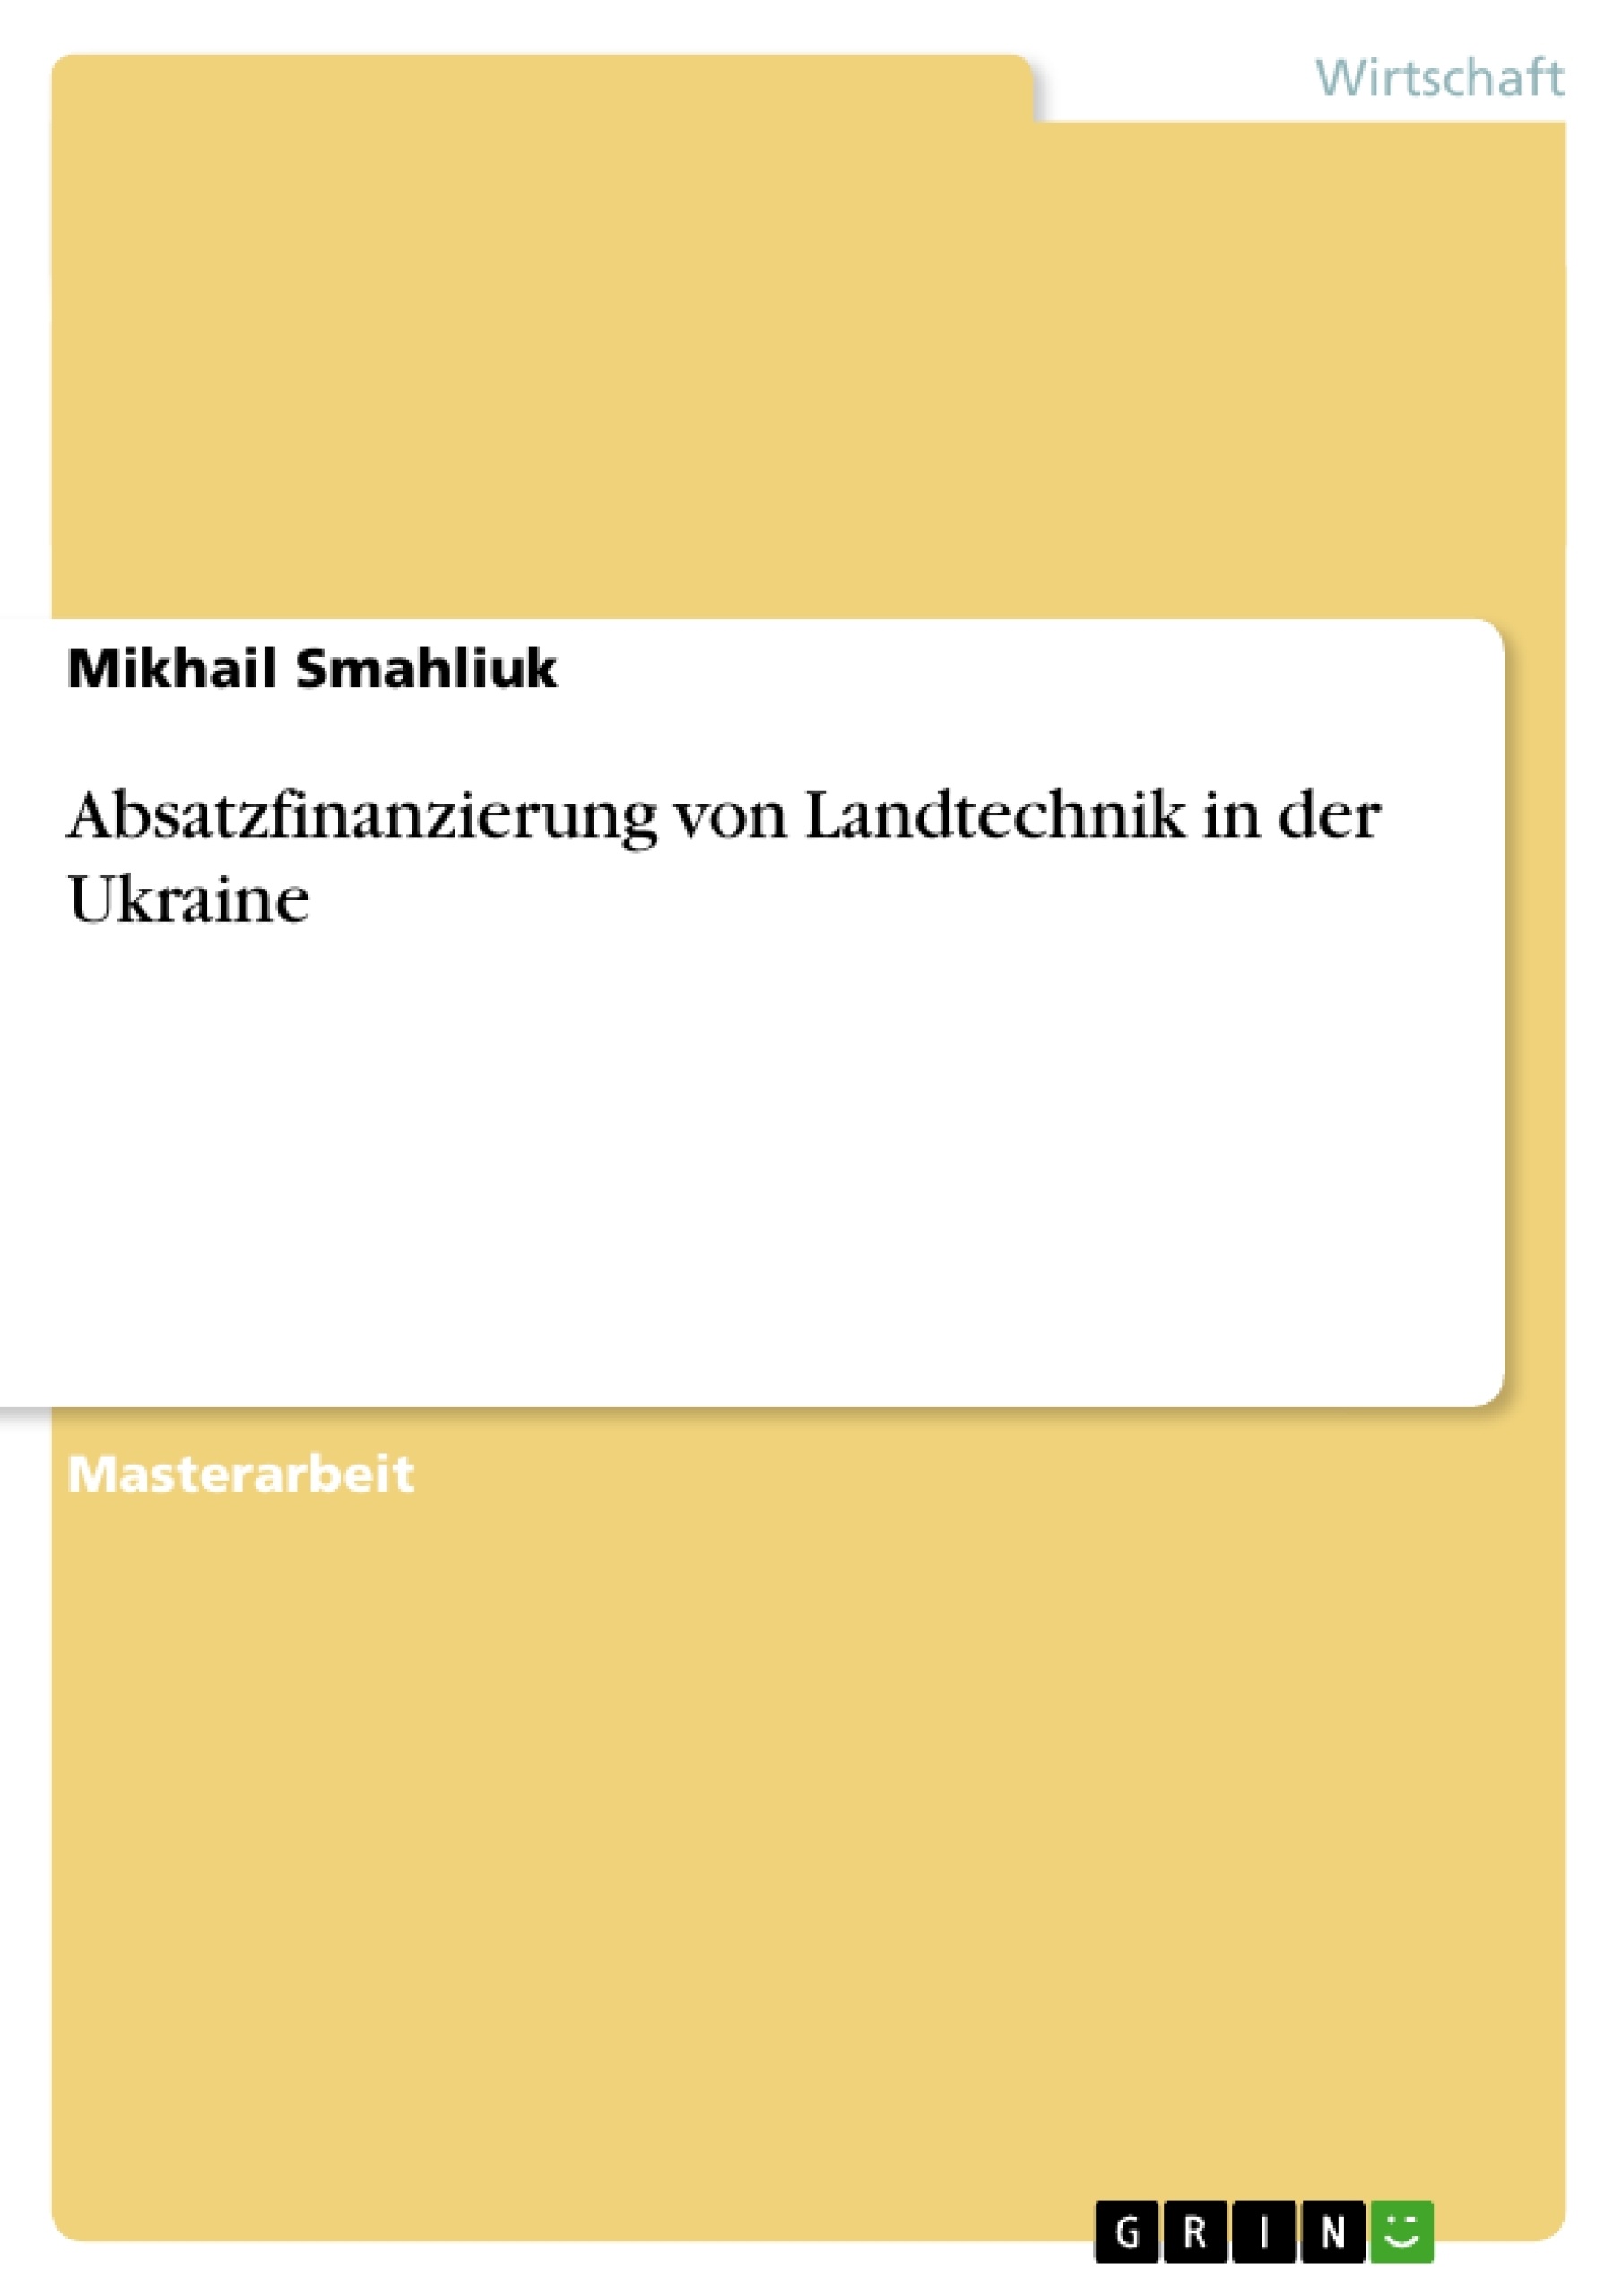 Title: Absatzfinanzierung von Landtechnik in der Ukraine